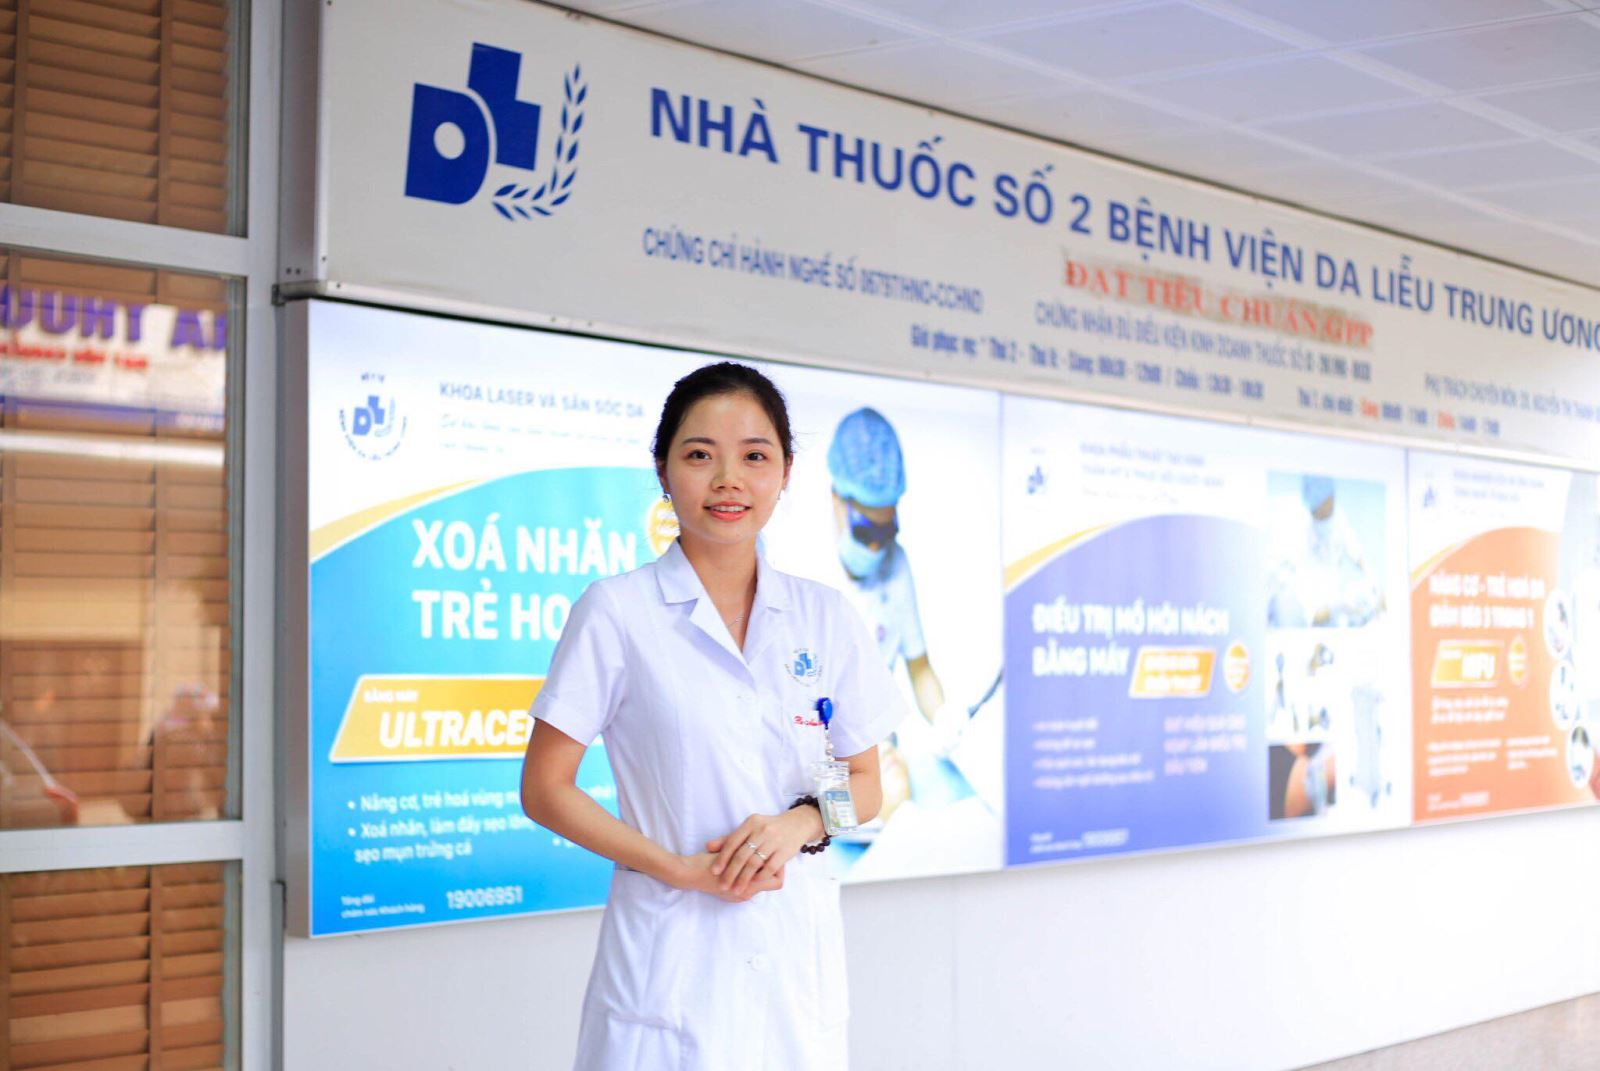 Bác sĩ Nguyễn Minh Thu, Phó trưởng khoa Điều trị bệnh da nam giới, Bệnh viện Da liễu Trung ương.